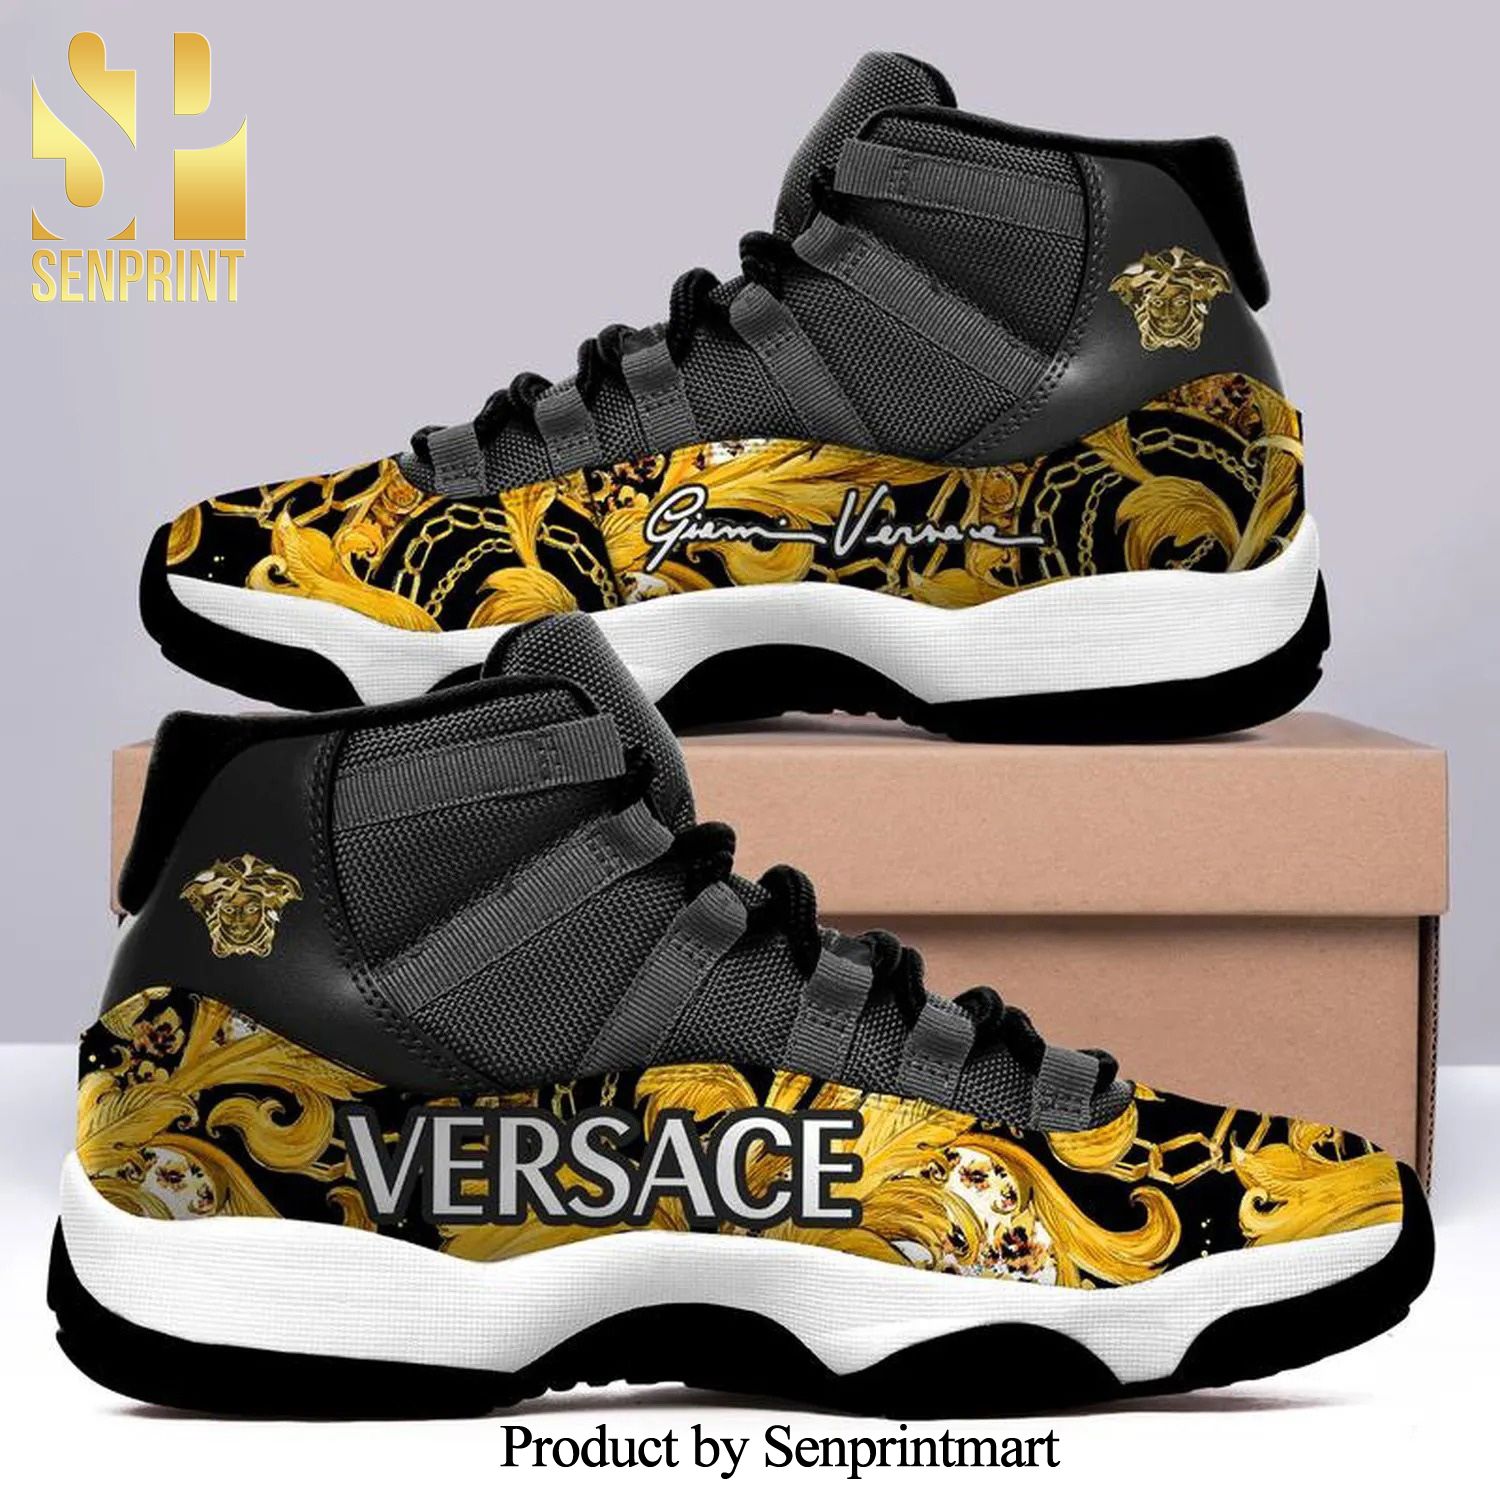 versace monogram black and gold Full Printed Air Jordan 11